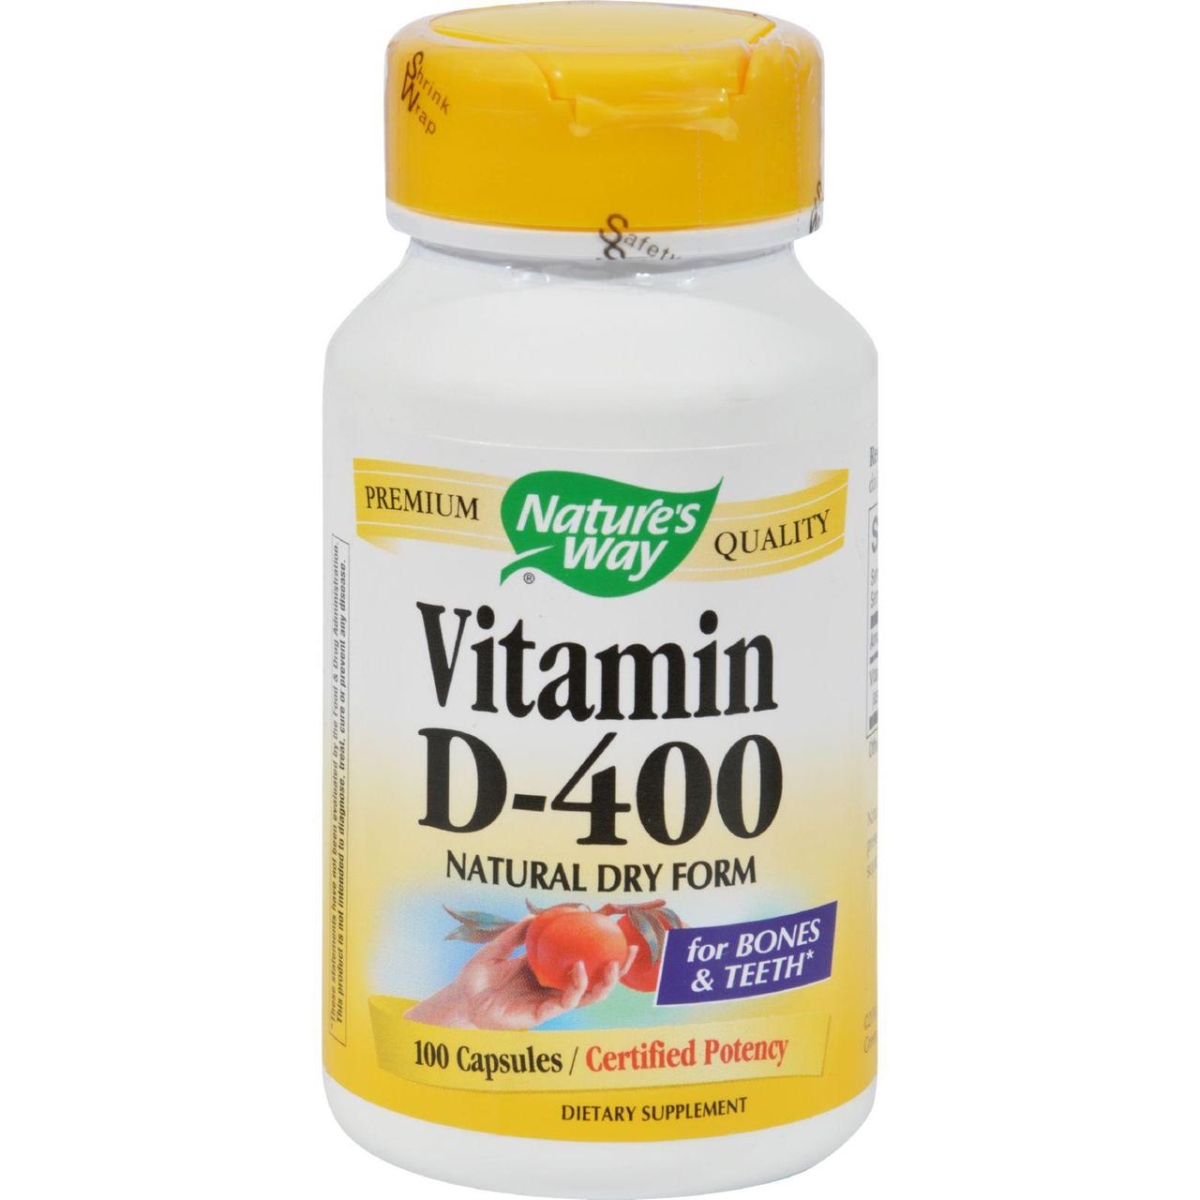 Hg0912980 Vitamin D-400, 400 Iu - 100 Capsules